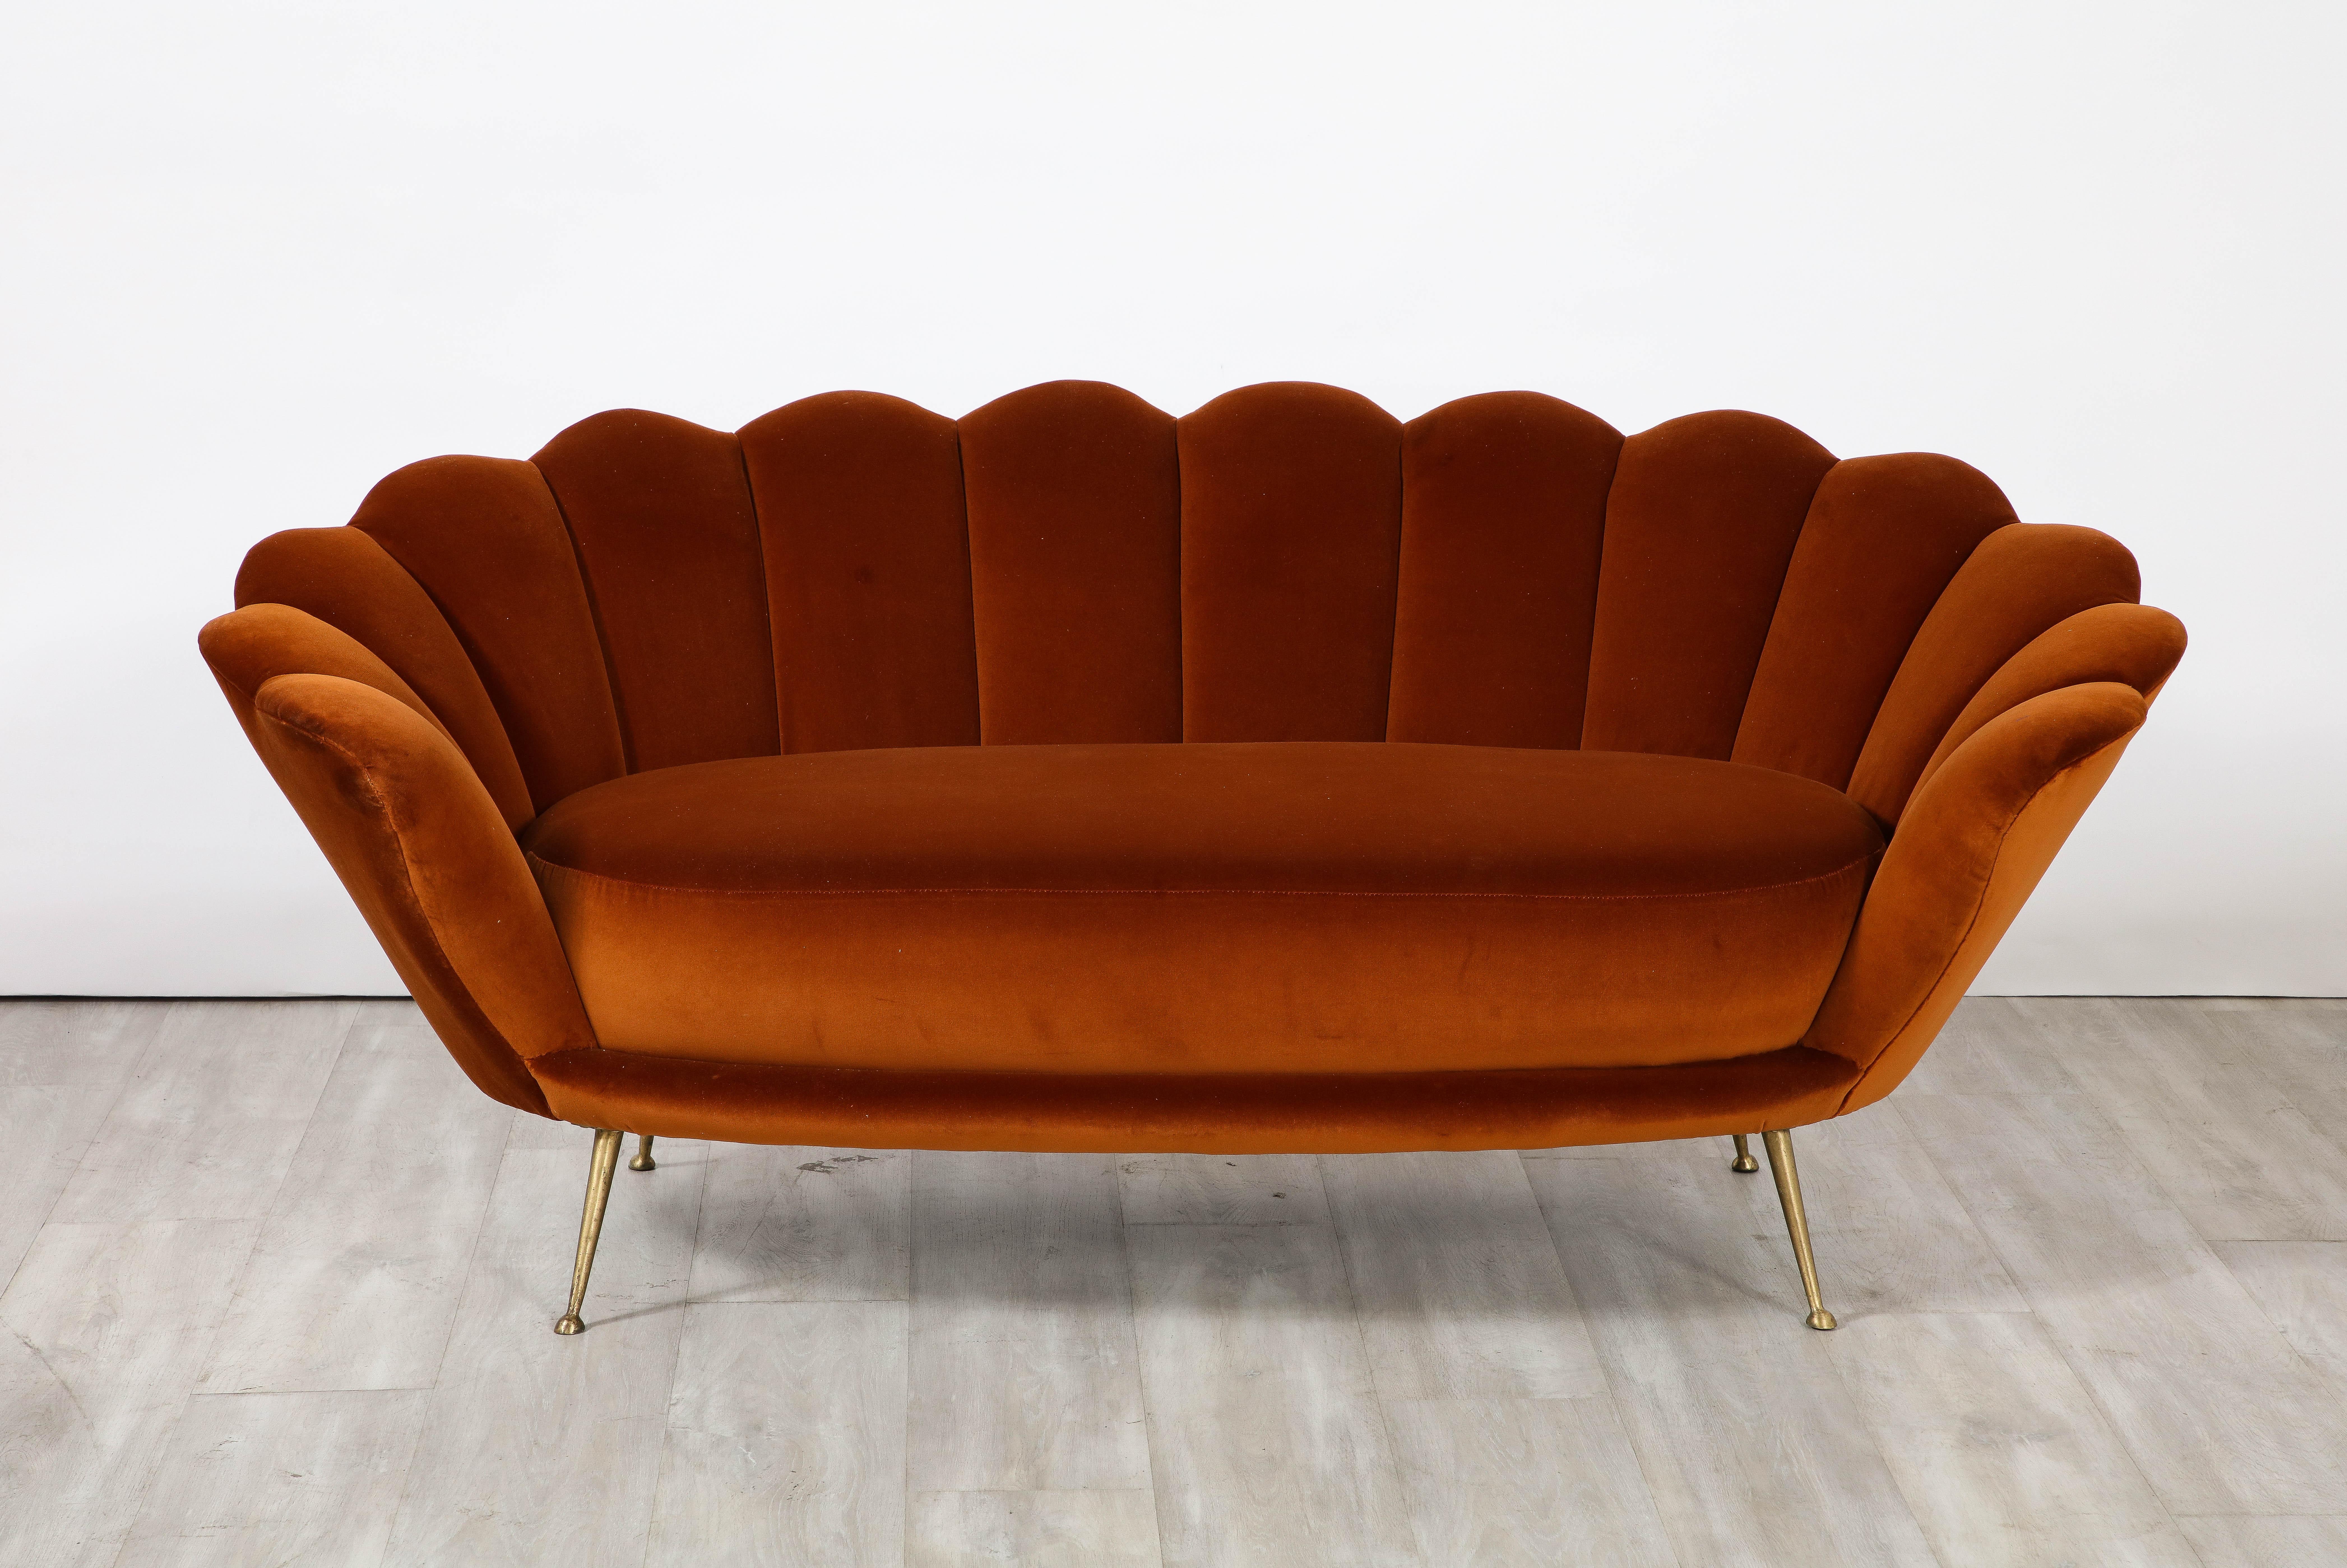 Ein dekadent gestaltetes italienisches Sofa aus den 1950er Jahren mit einer gewellten oder blütenblattförmigen Form und luxuriös gepolstertem, kanalisiertem Rückentufting. Das Sofa wurde vollständig restauriert und neu gepolstert in einem reichen